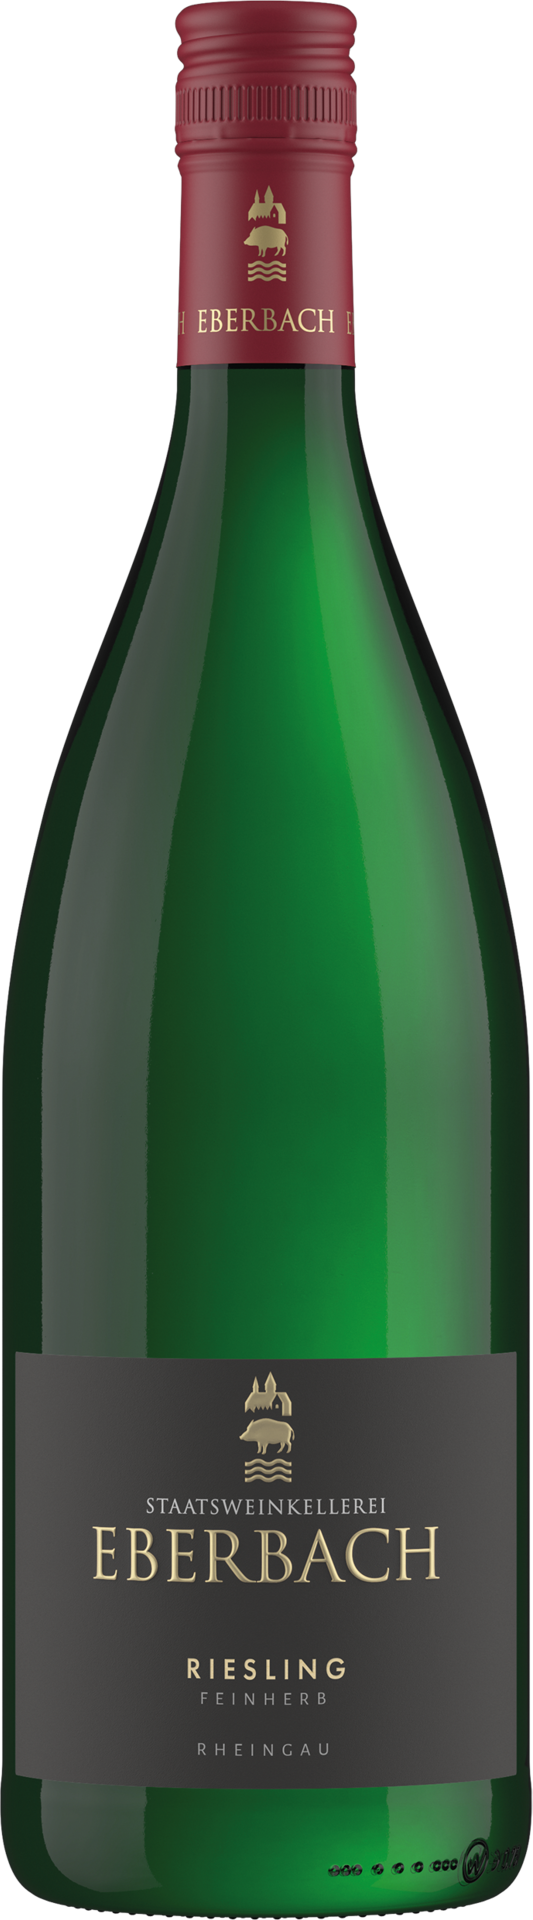 Staatsweinkellerei Eberbach Riesling feinherb Liter - 2021